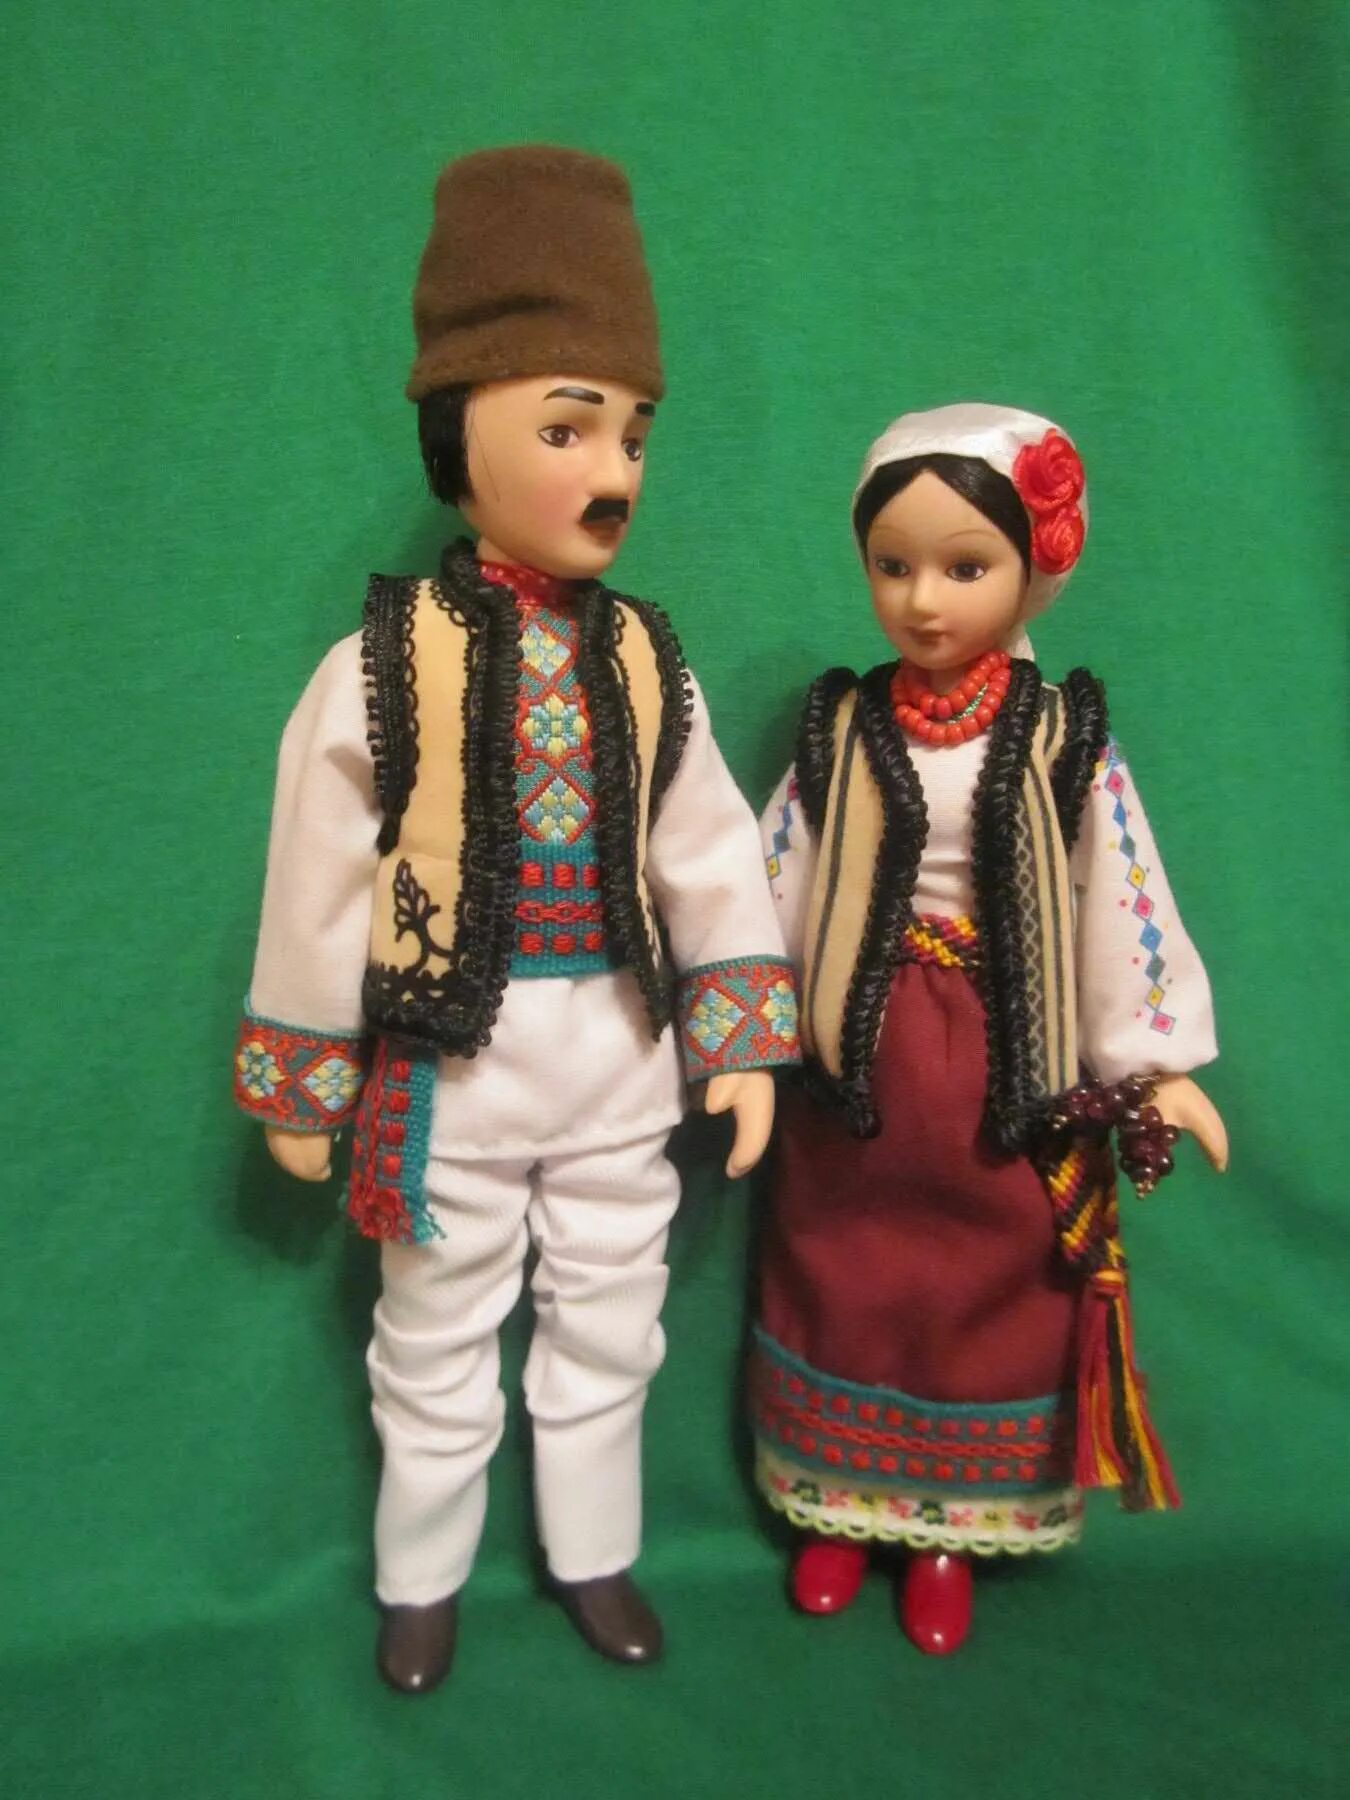 Молдаван нация. Национальный костюм Молдавии мужской. Национальный костюм молдавская ССР. Костюмы Молдован национальные куклы. Национальный костюм молдаван кукла.